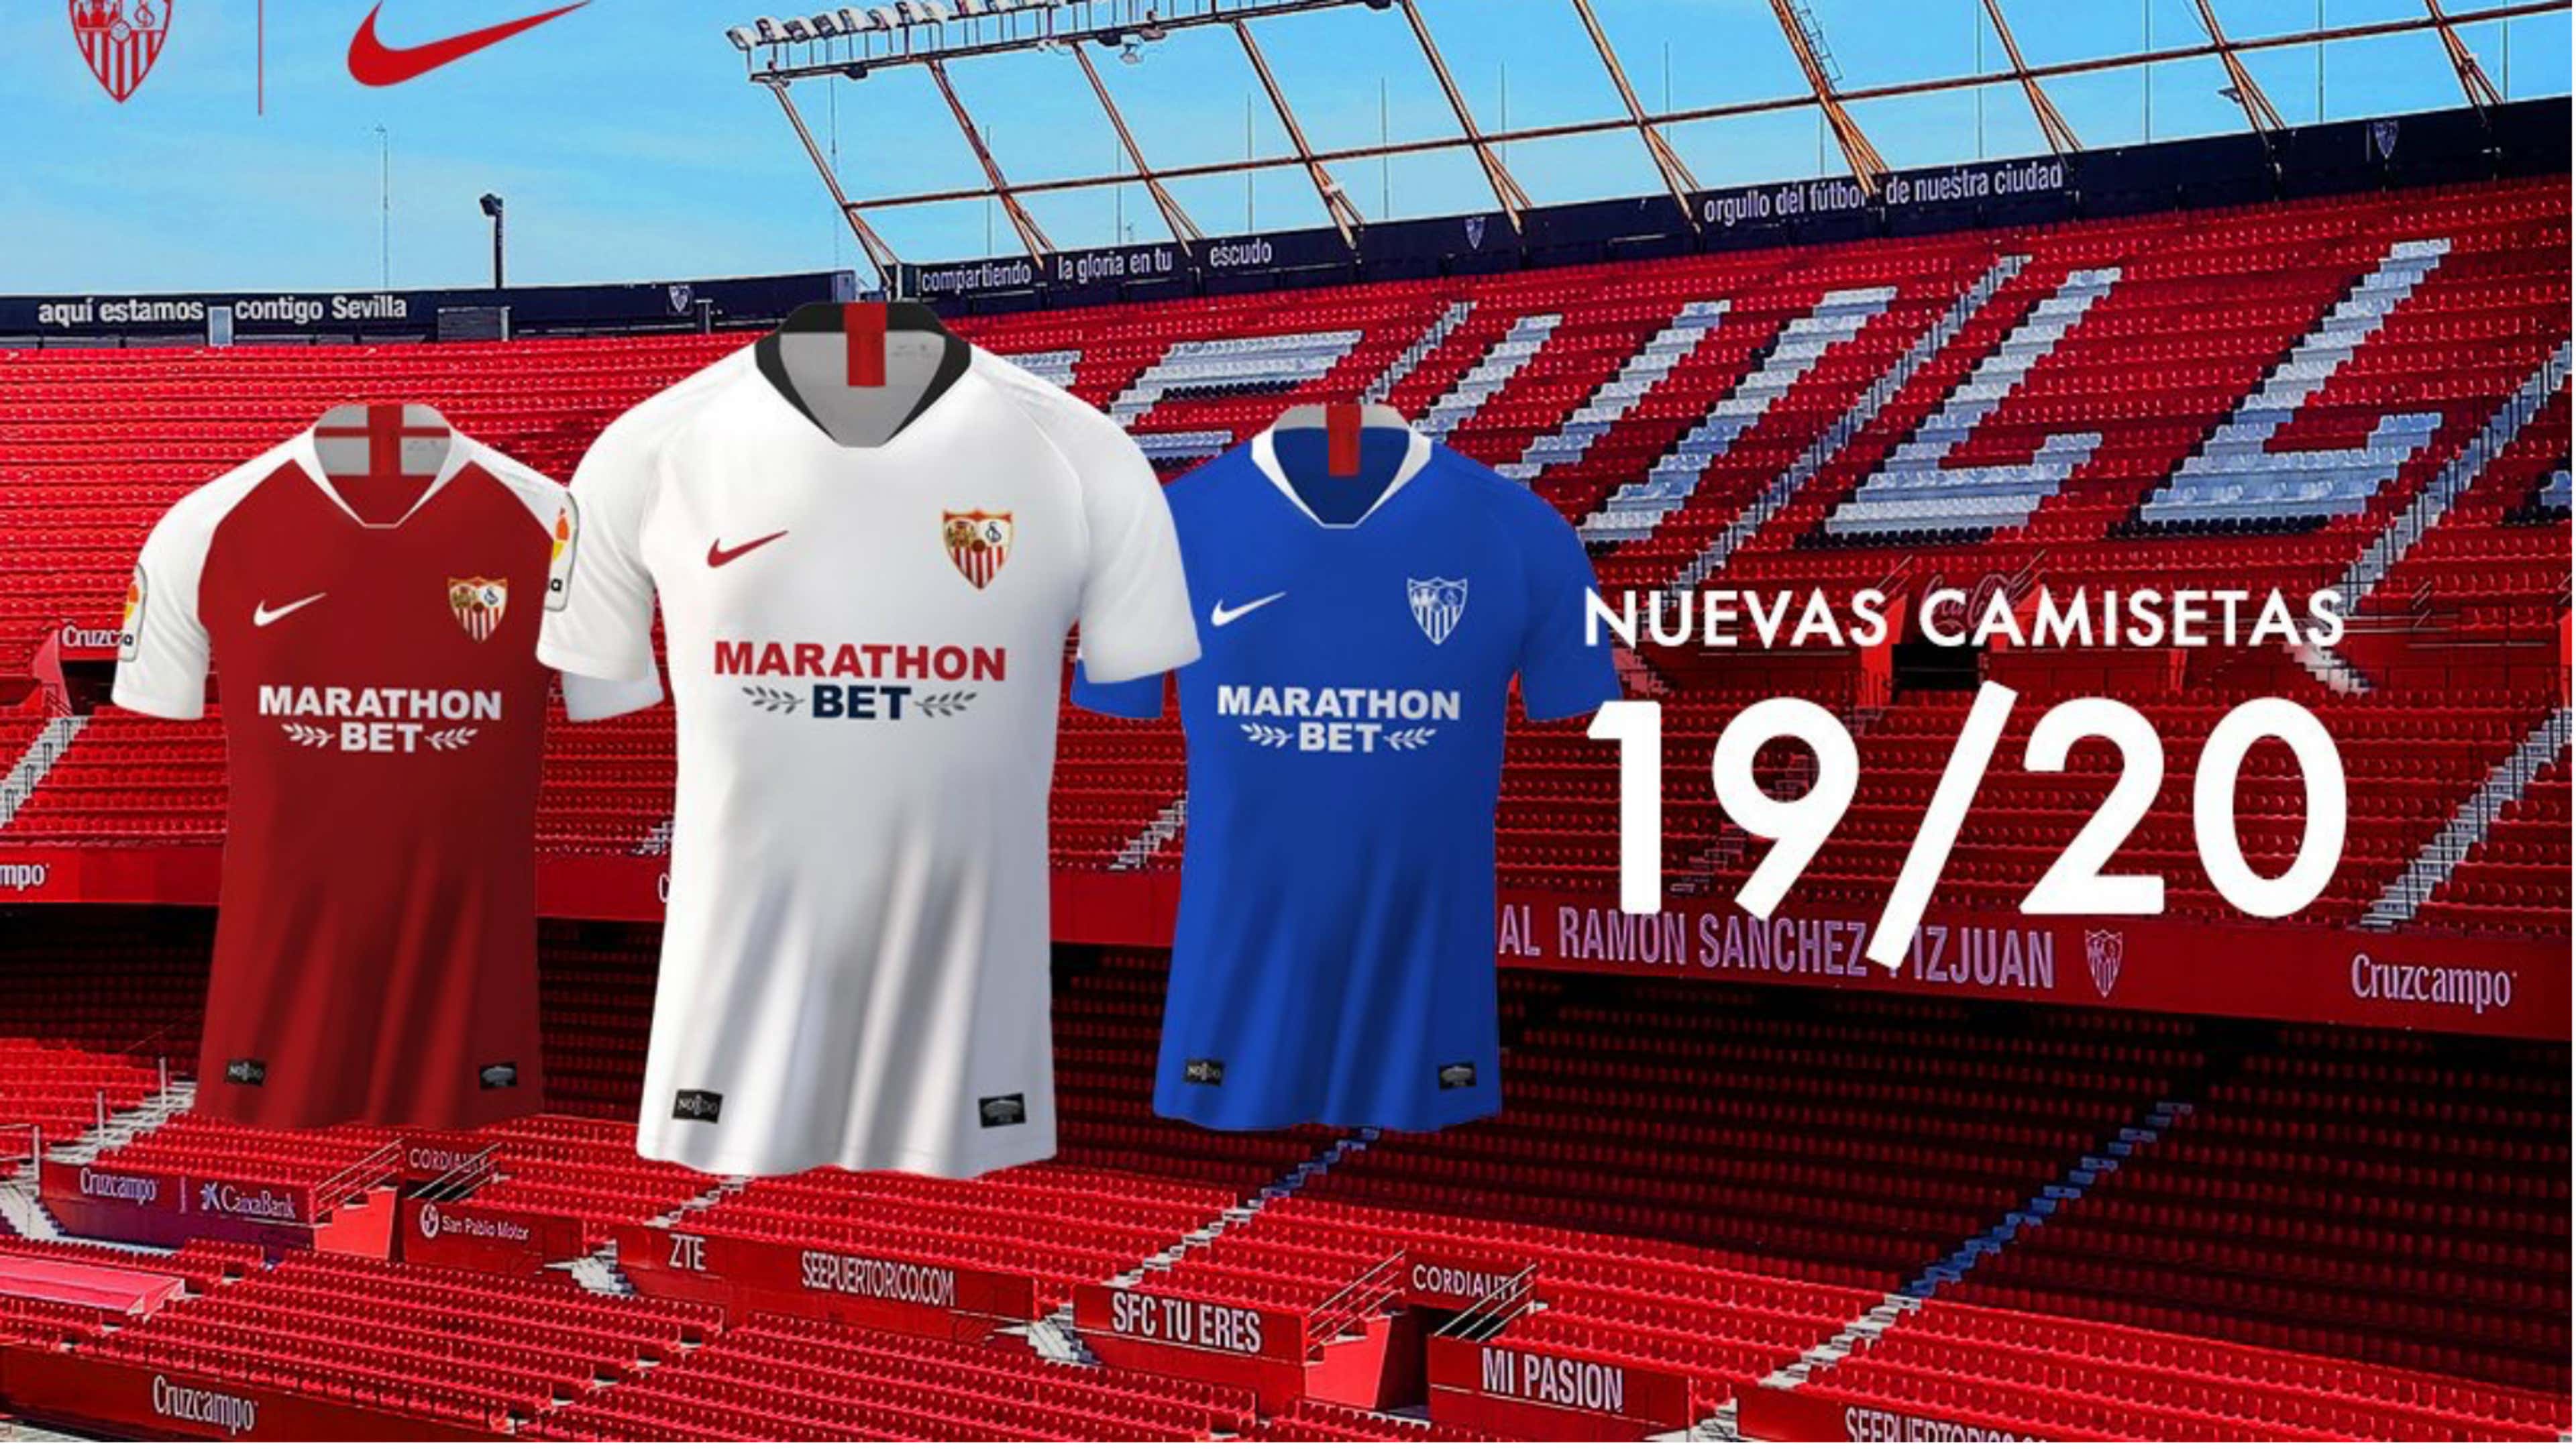 El Sevilla presenta sus nuevas camisetas para la temporada 2019-2020 Marathon Bet como nuevo patrocinador | Goal.com Argentina